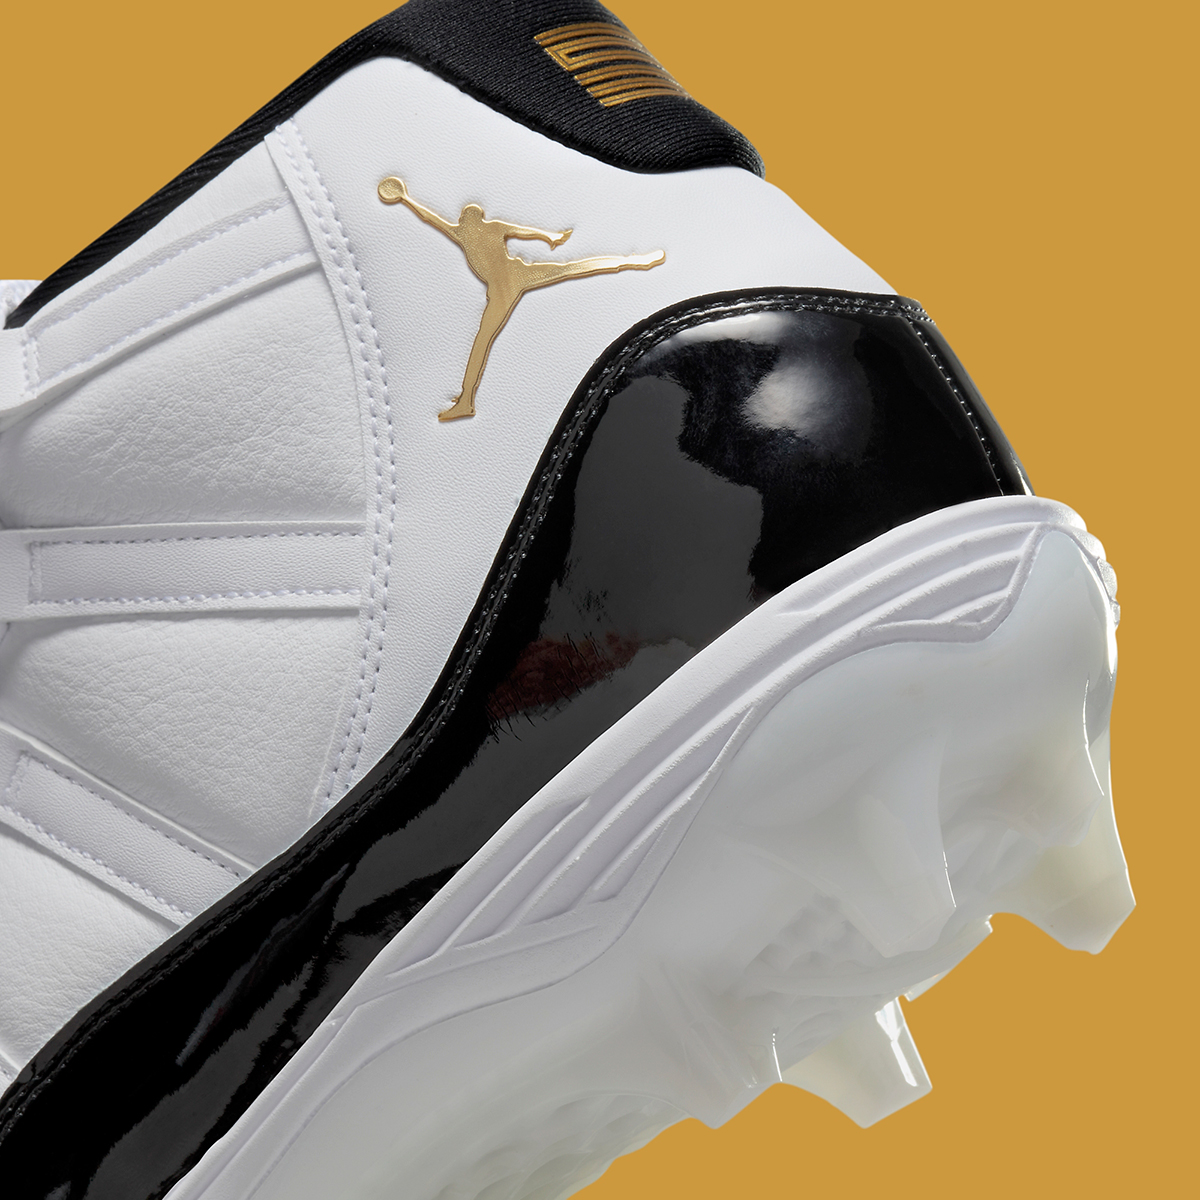 Nike Air Jordan Spizike 1 Low SE Tie Dye UK 10 Cleats Fv5374 107 5